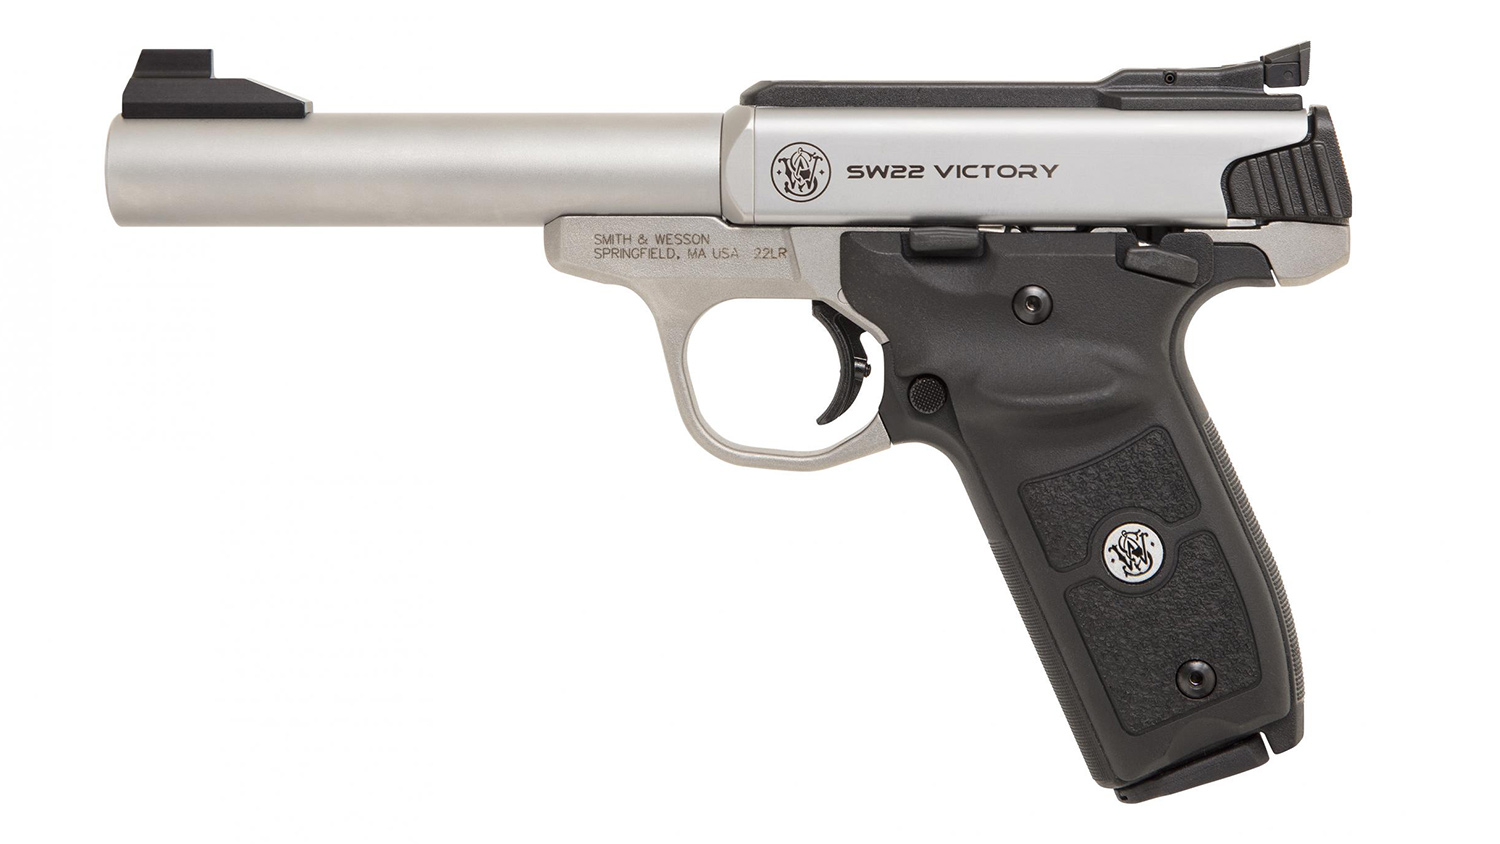 SW22 Victory Target Model .22 LR